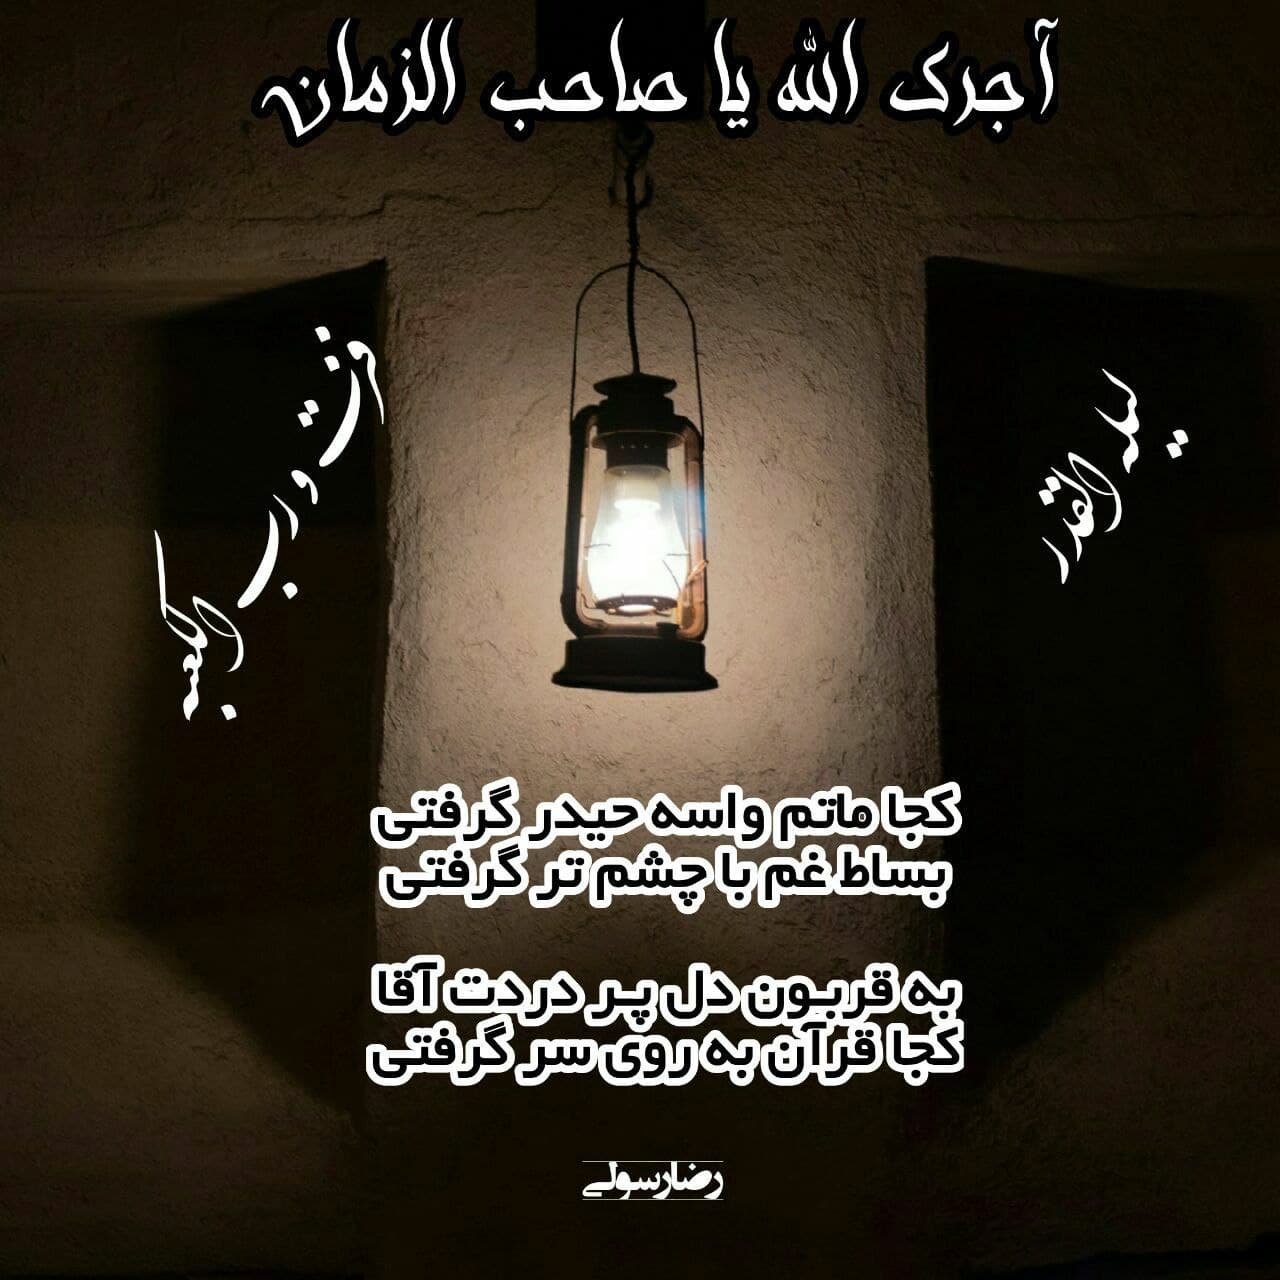 مناجات با امام زمان(ع) در شب قدر -(کجا ماتم واسه حیدر گرفتی...)